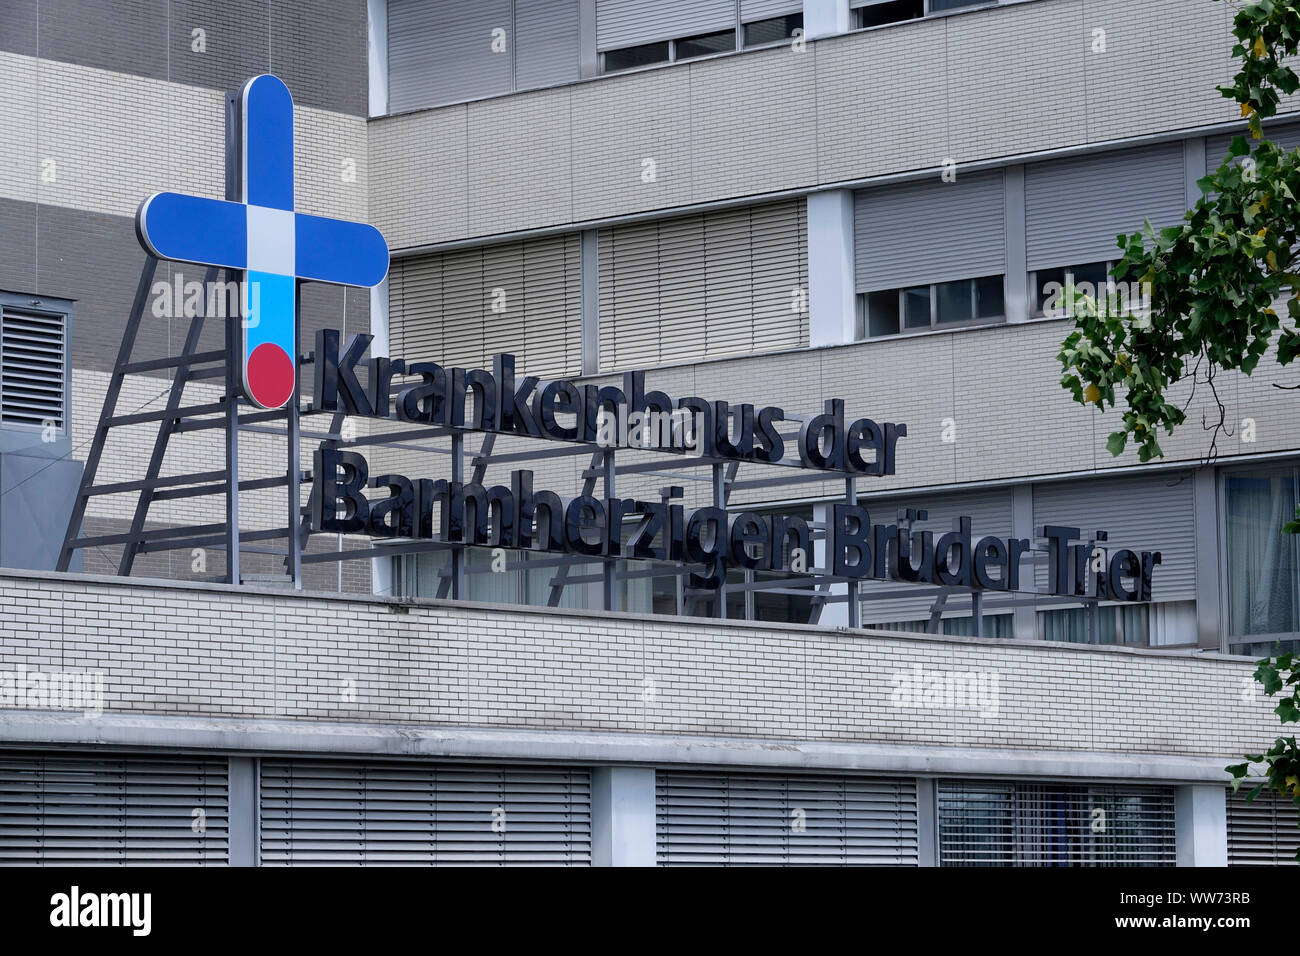 Krankenhaus der Barmherzigen BrÃ¼der Hospital, Trier, Rhineland-Palatinate, Germany Stock Photo